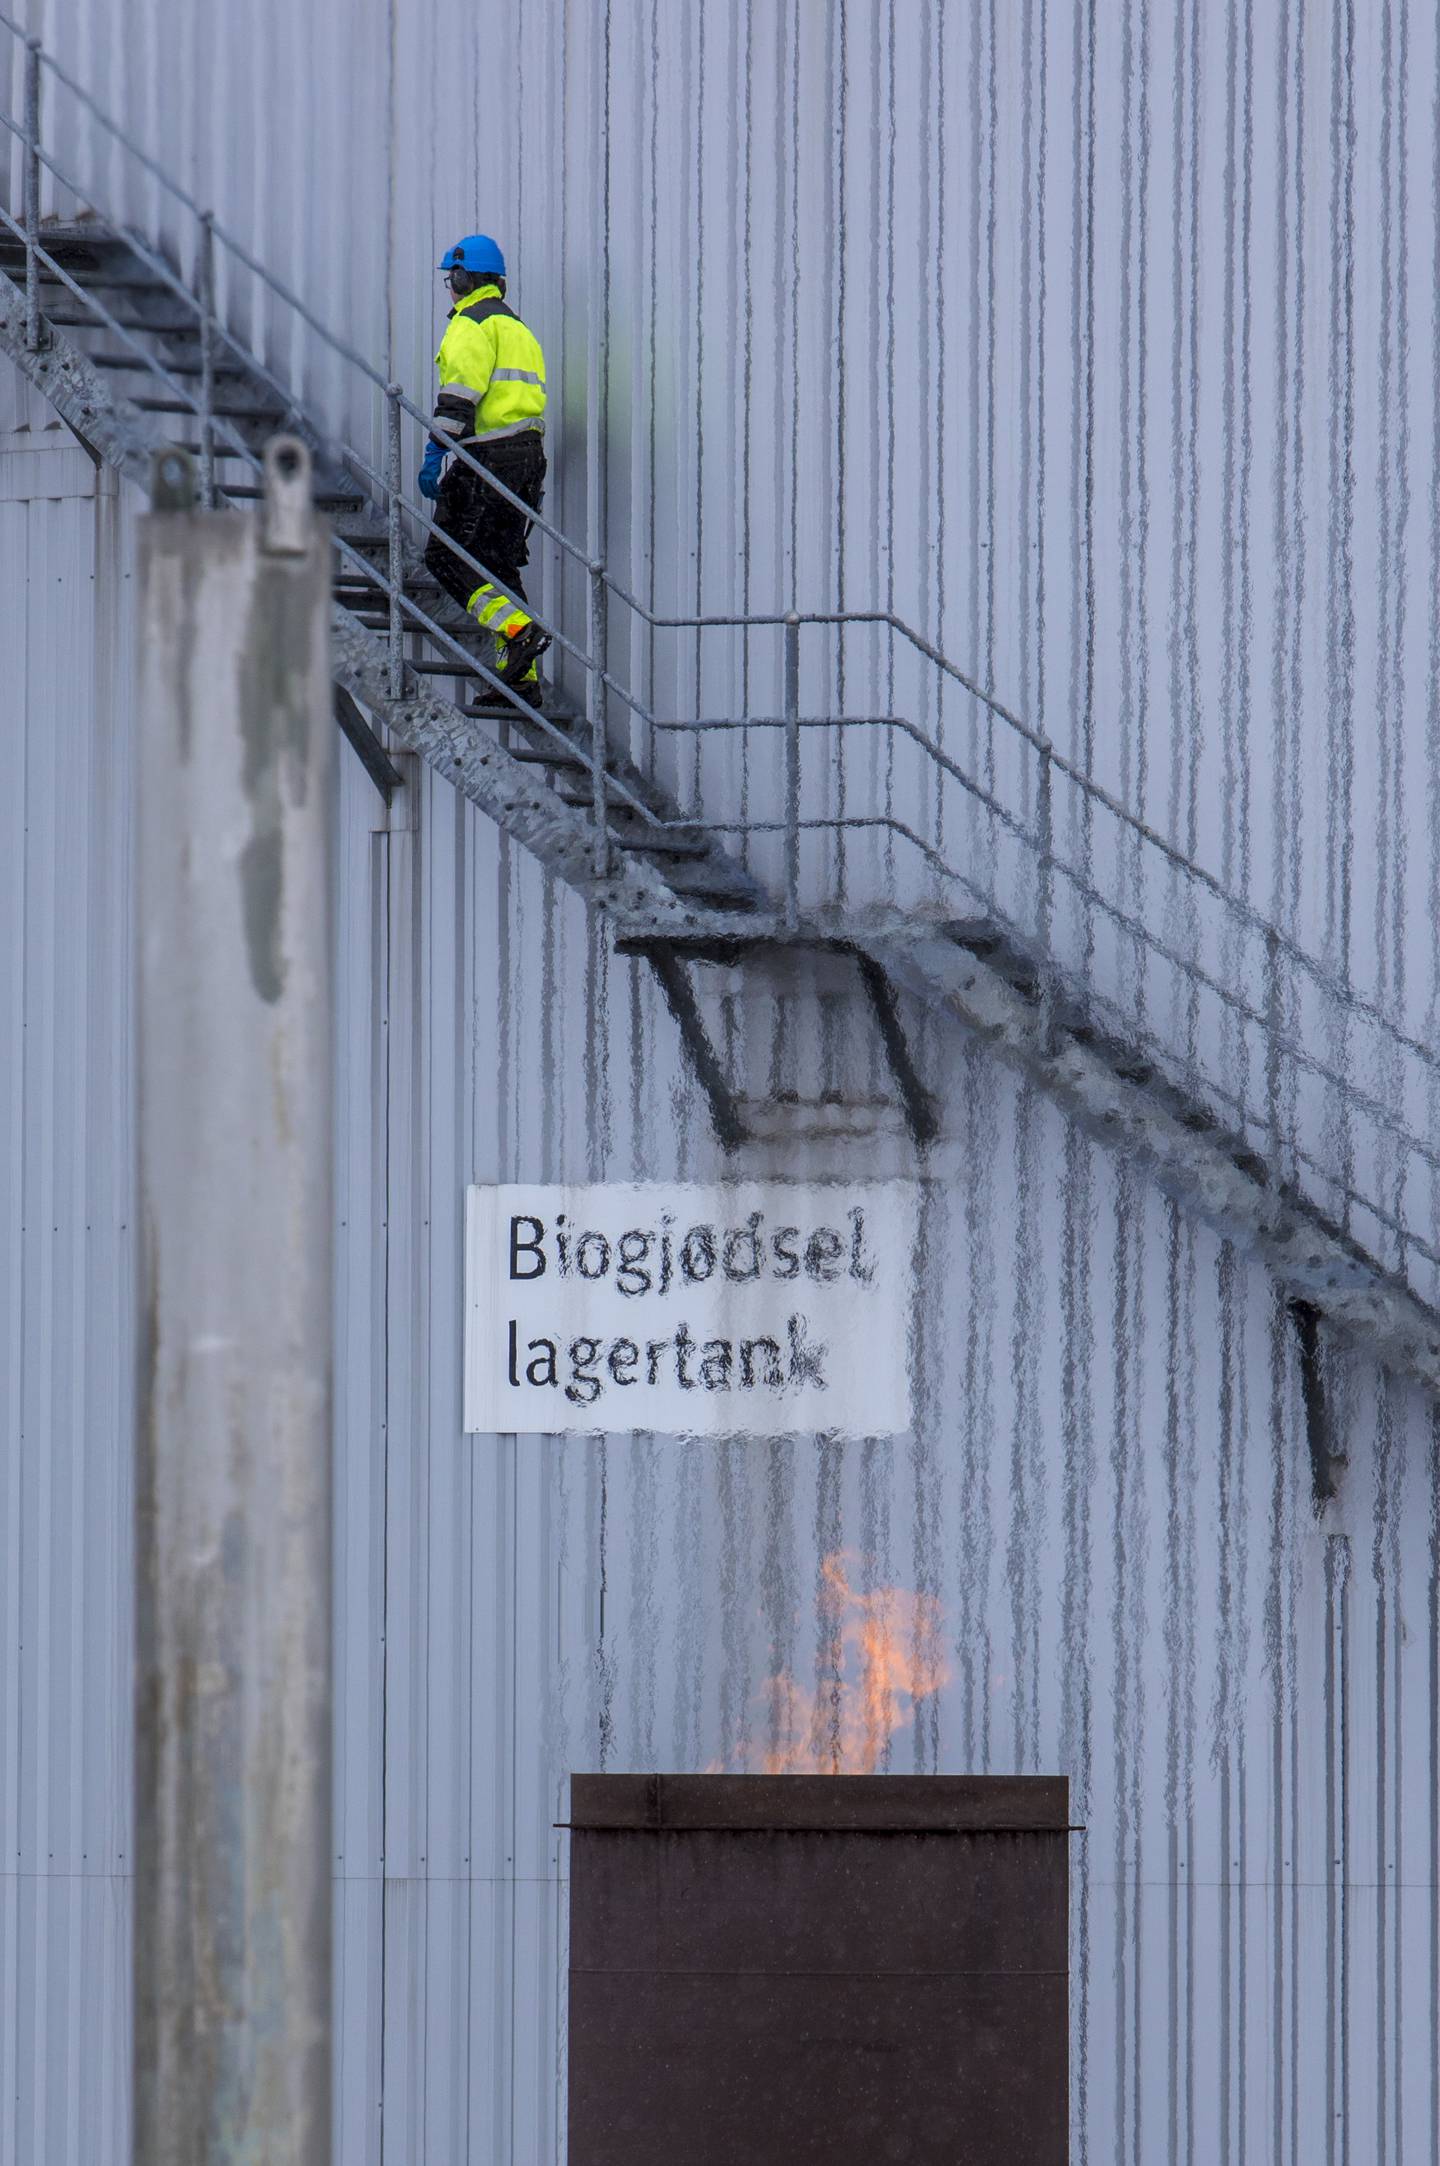 Oslo kommunes biogassanlegg i Nes på Romerike har i utgangspunktet kapasitet til å håndtere 5000 tonn matavfall i året. I år ligger de an til å faktisk få inn 16. Mye av gassen som produseres ender opp med å fakles på stedet.